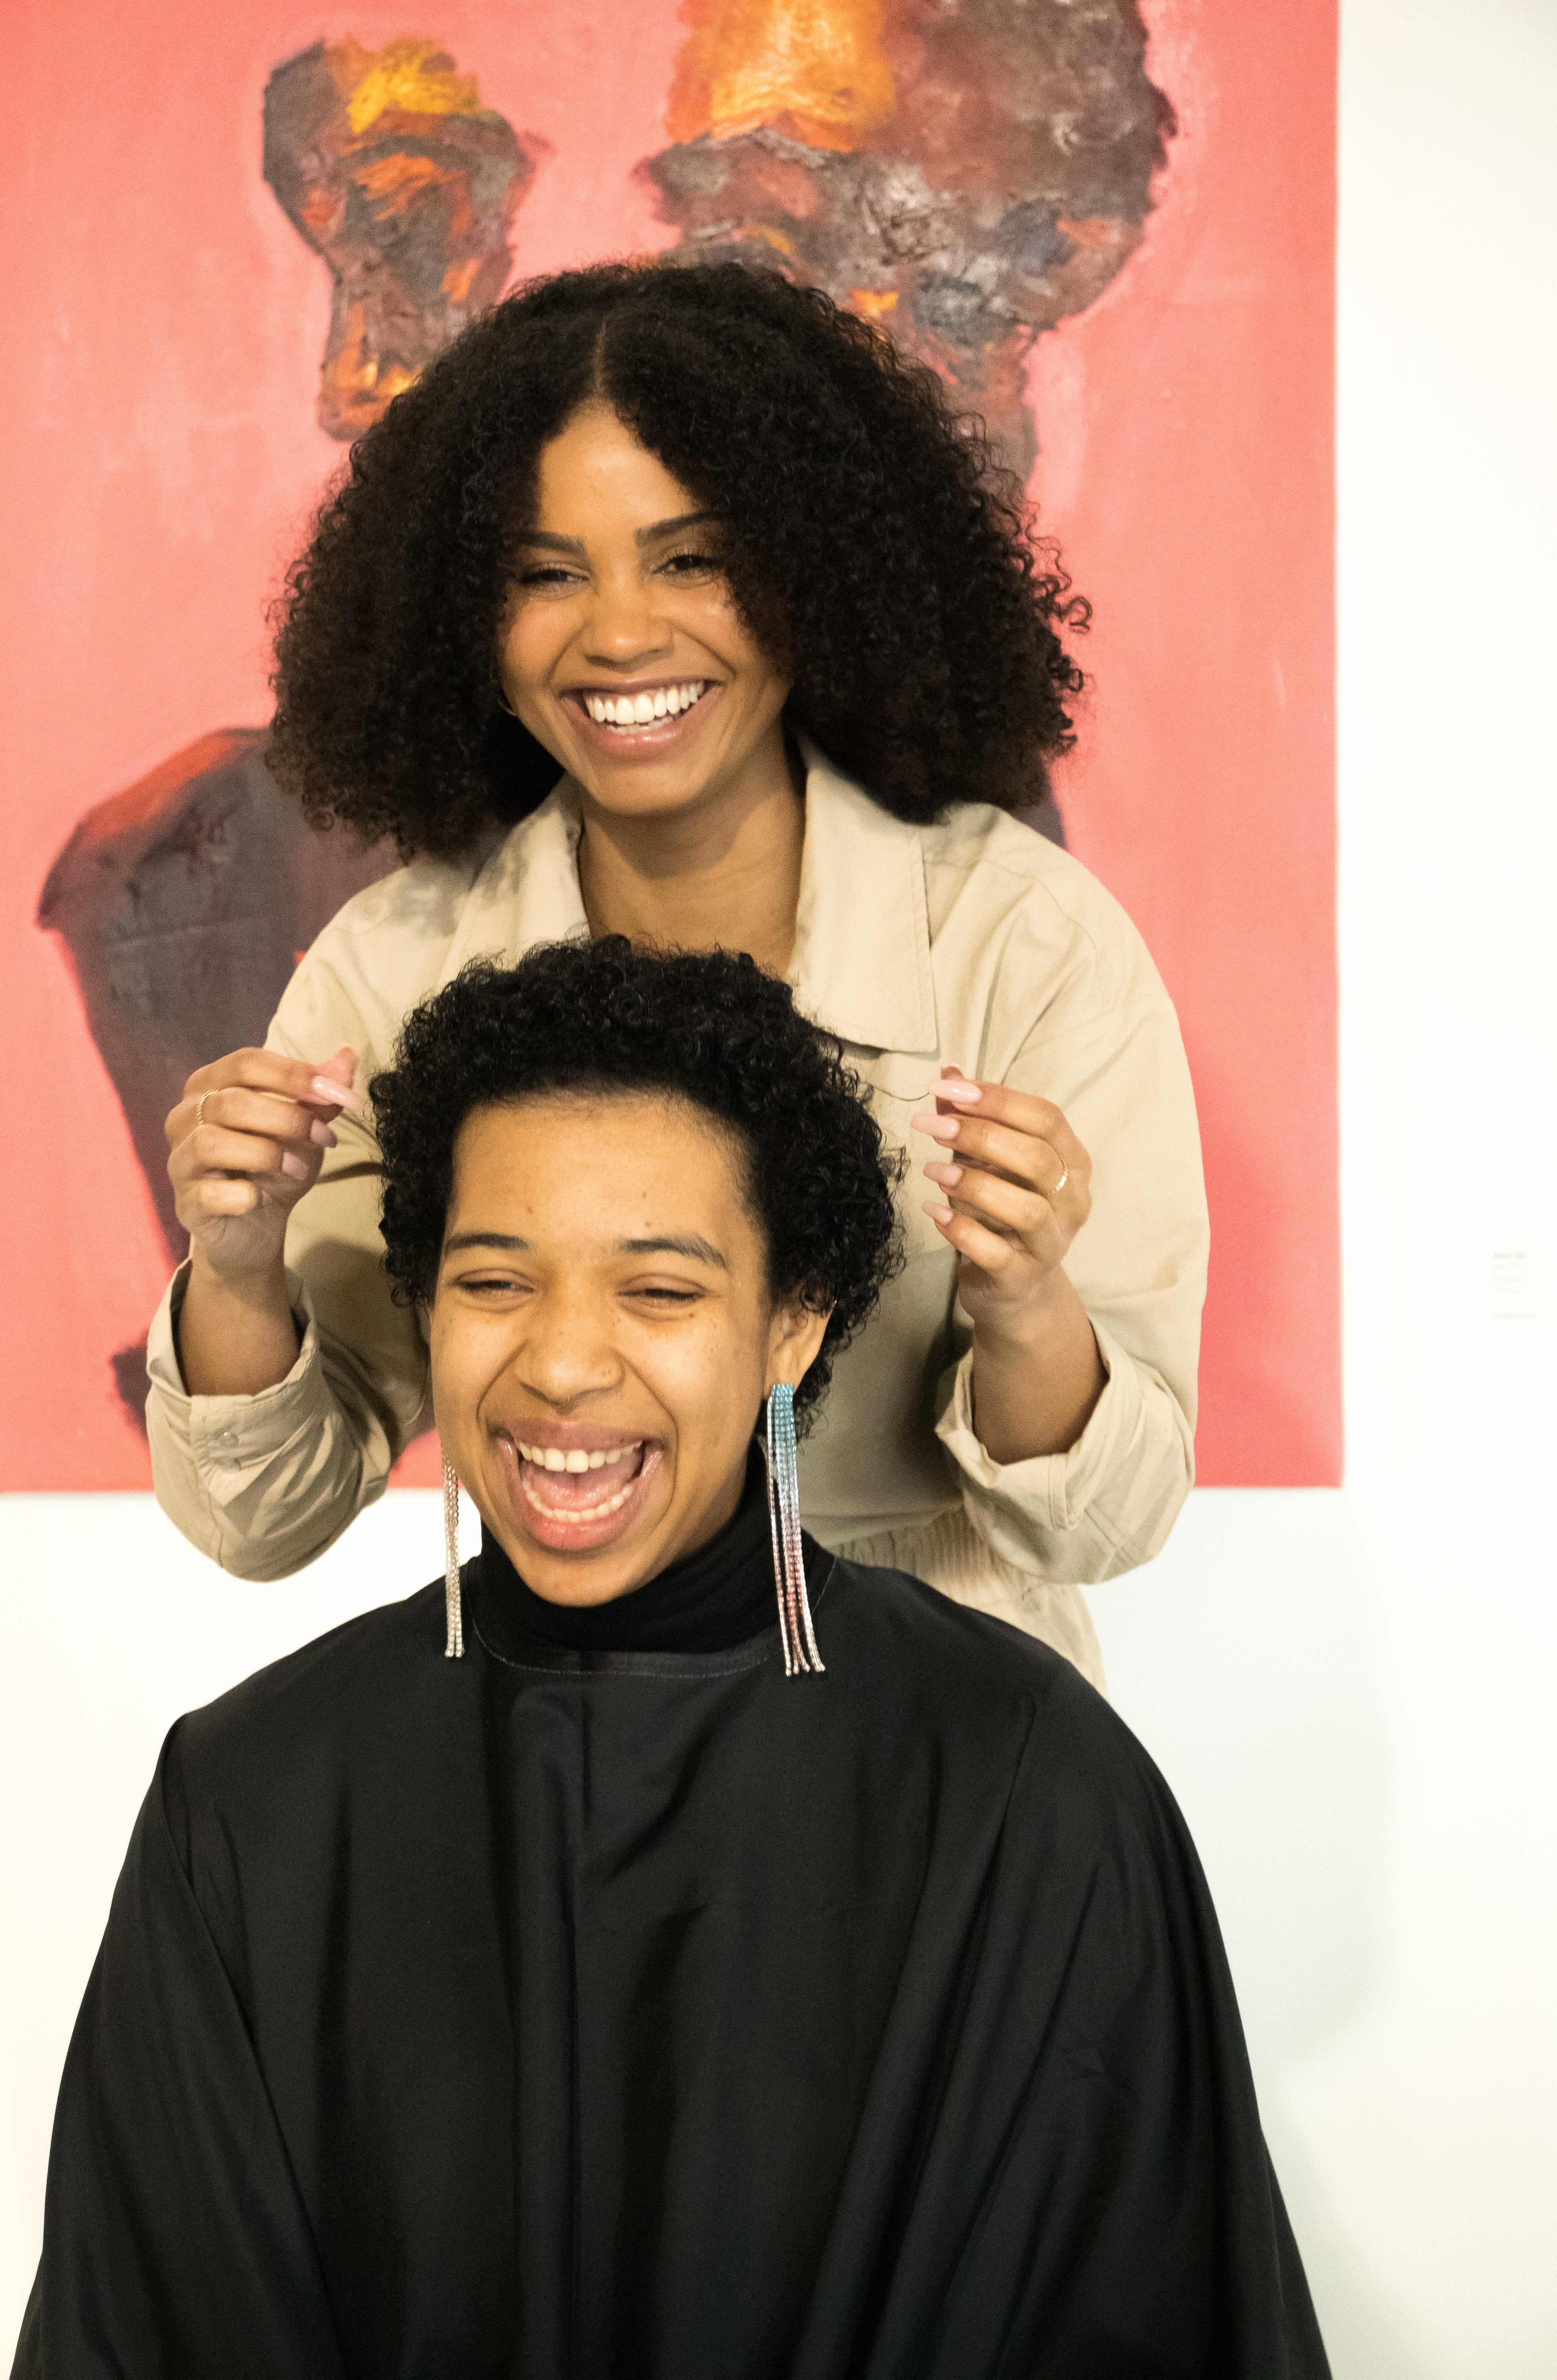 JONA curly hair care: Pop-up und Workshops rund um die Afrohaarpflege - 